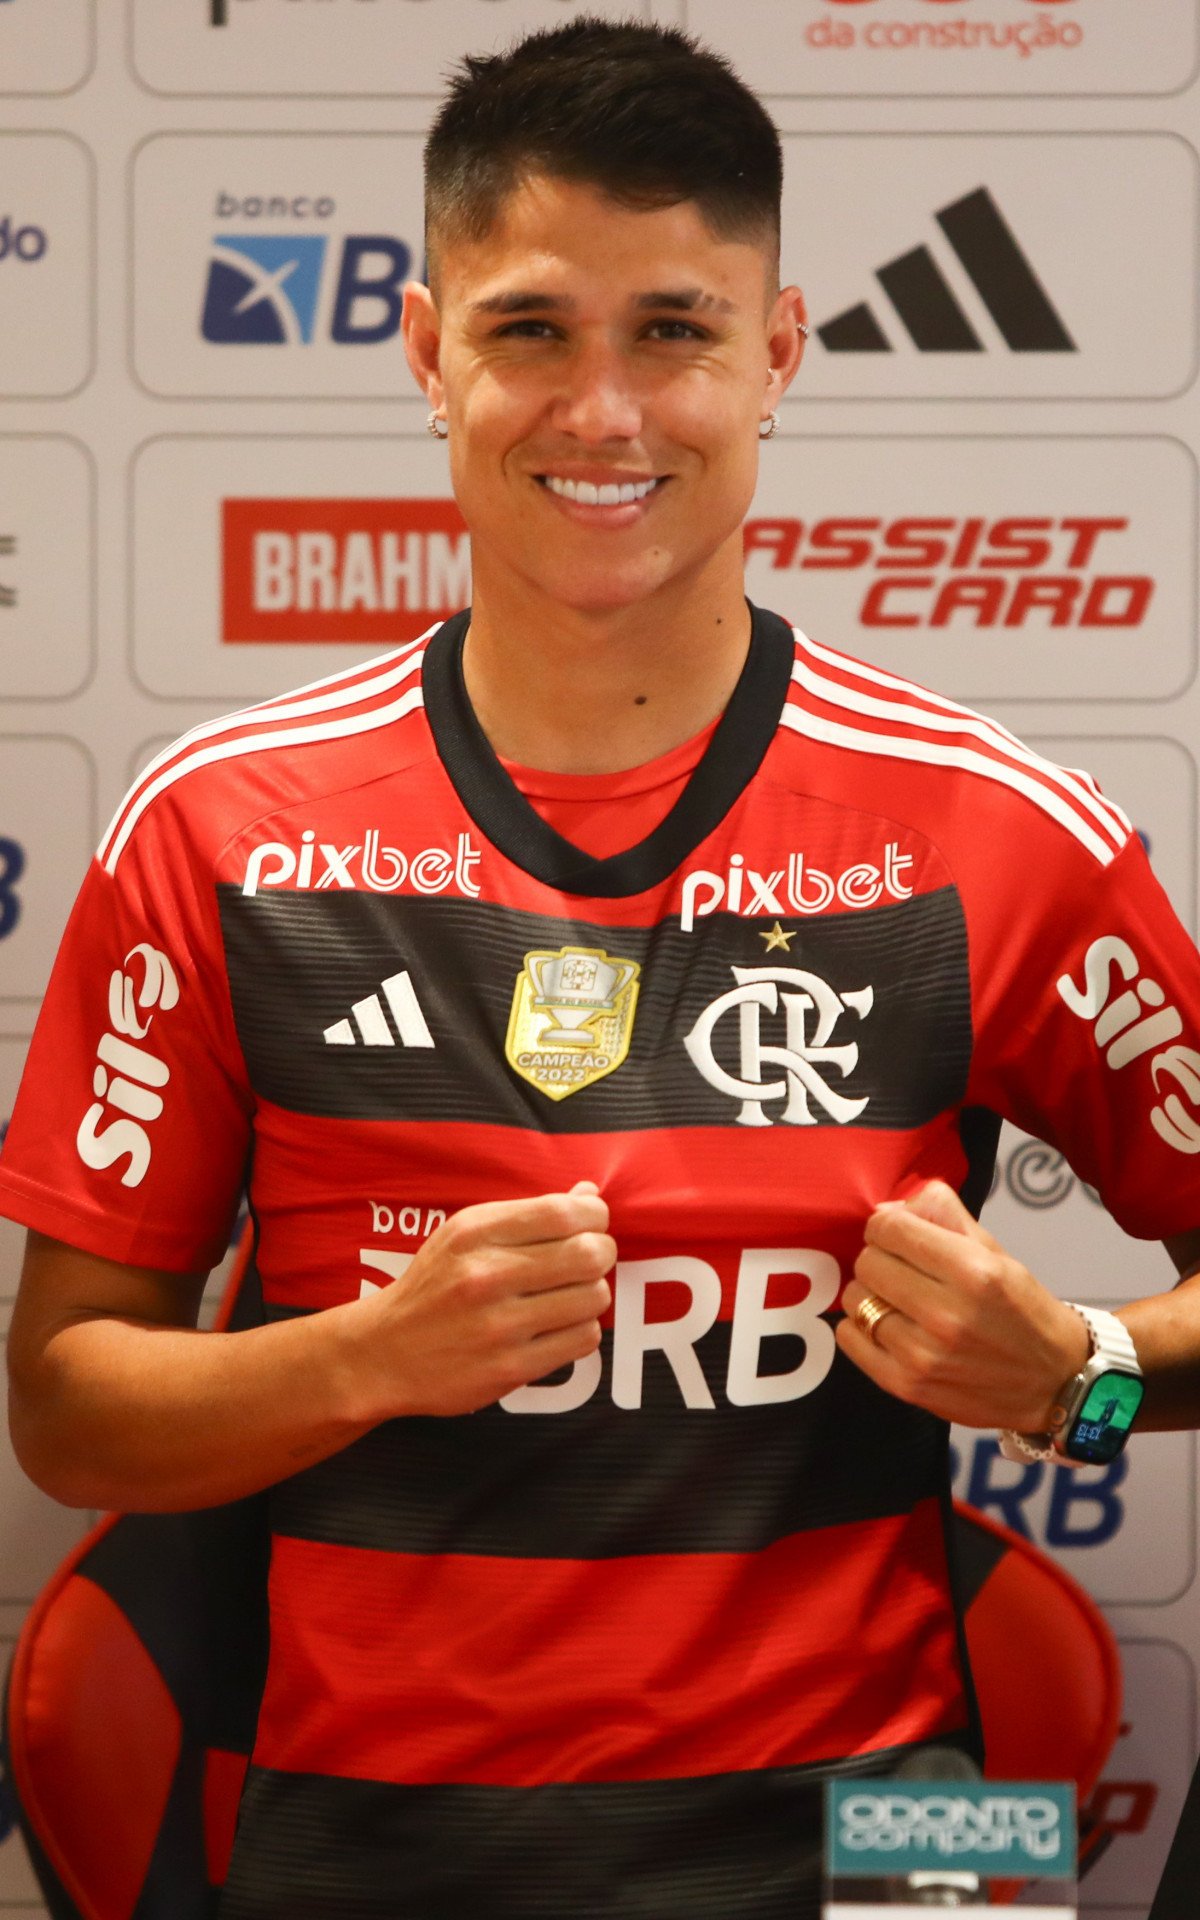 Saiba quem é Luiz Araújo, novo reforço do Flamengo